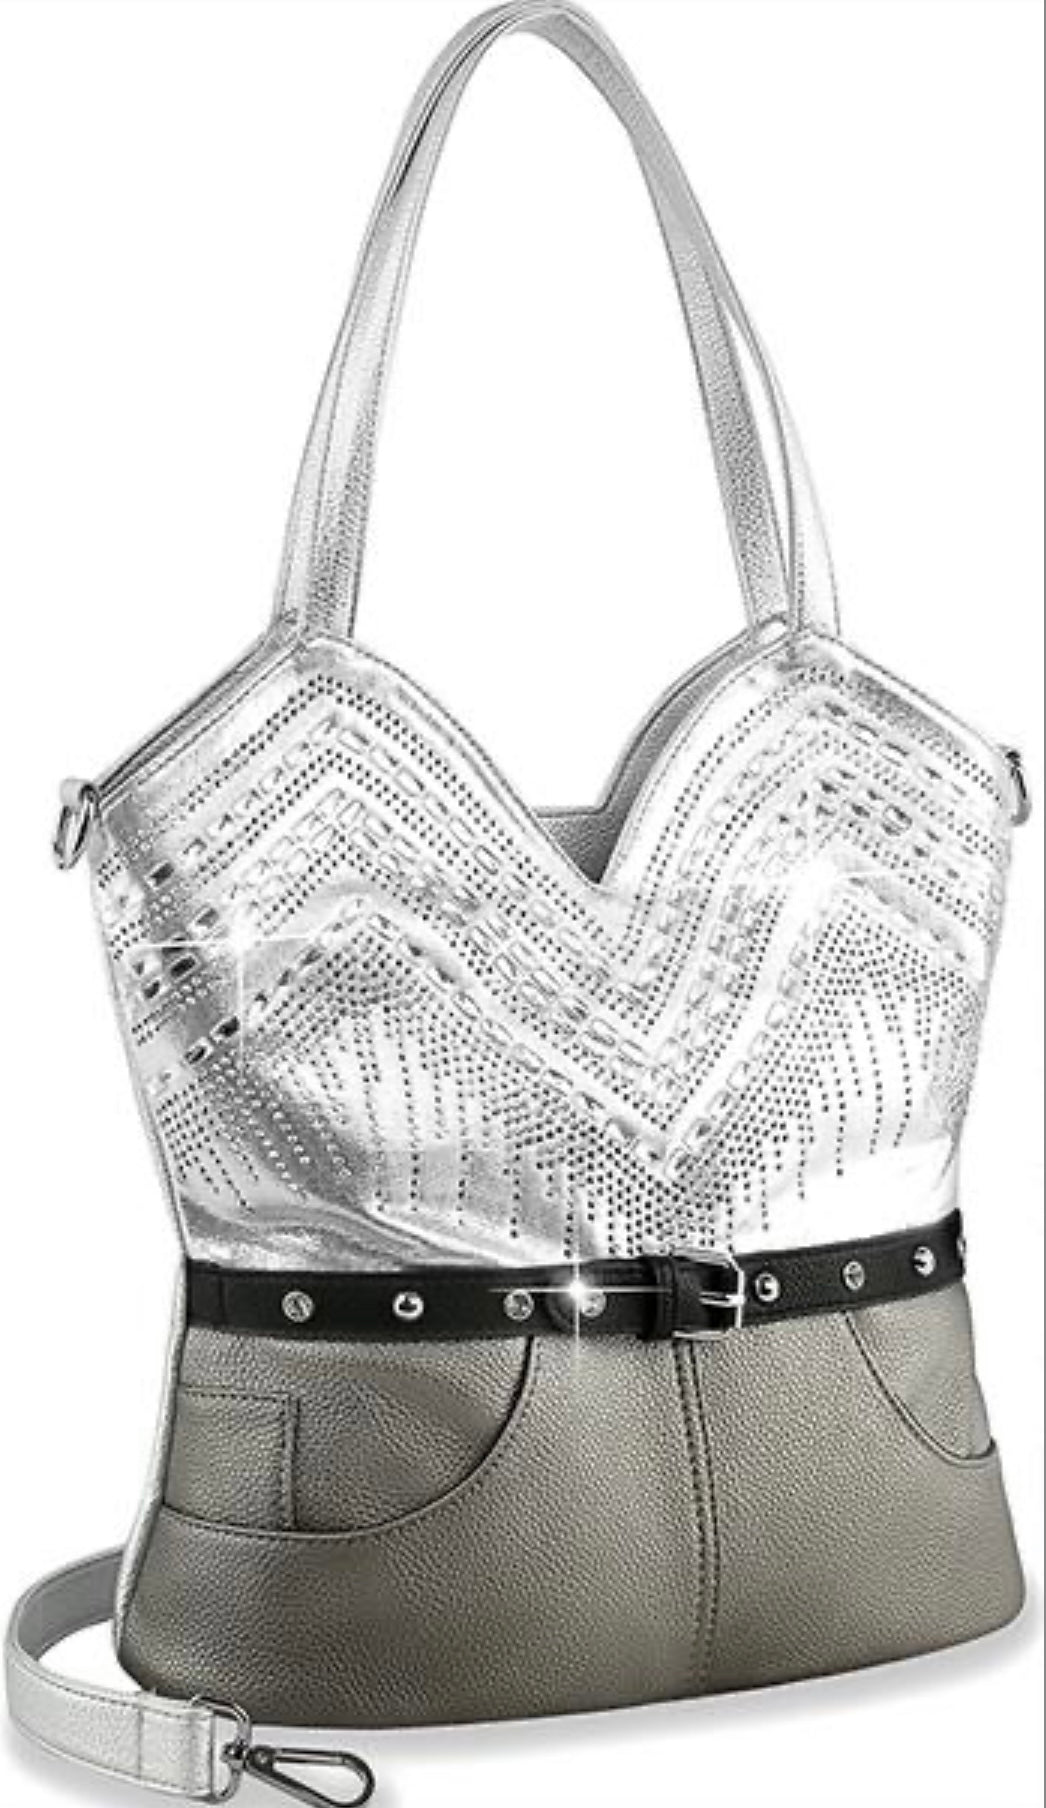 Silver corset design rhinestone pattern tote